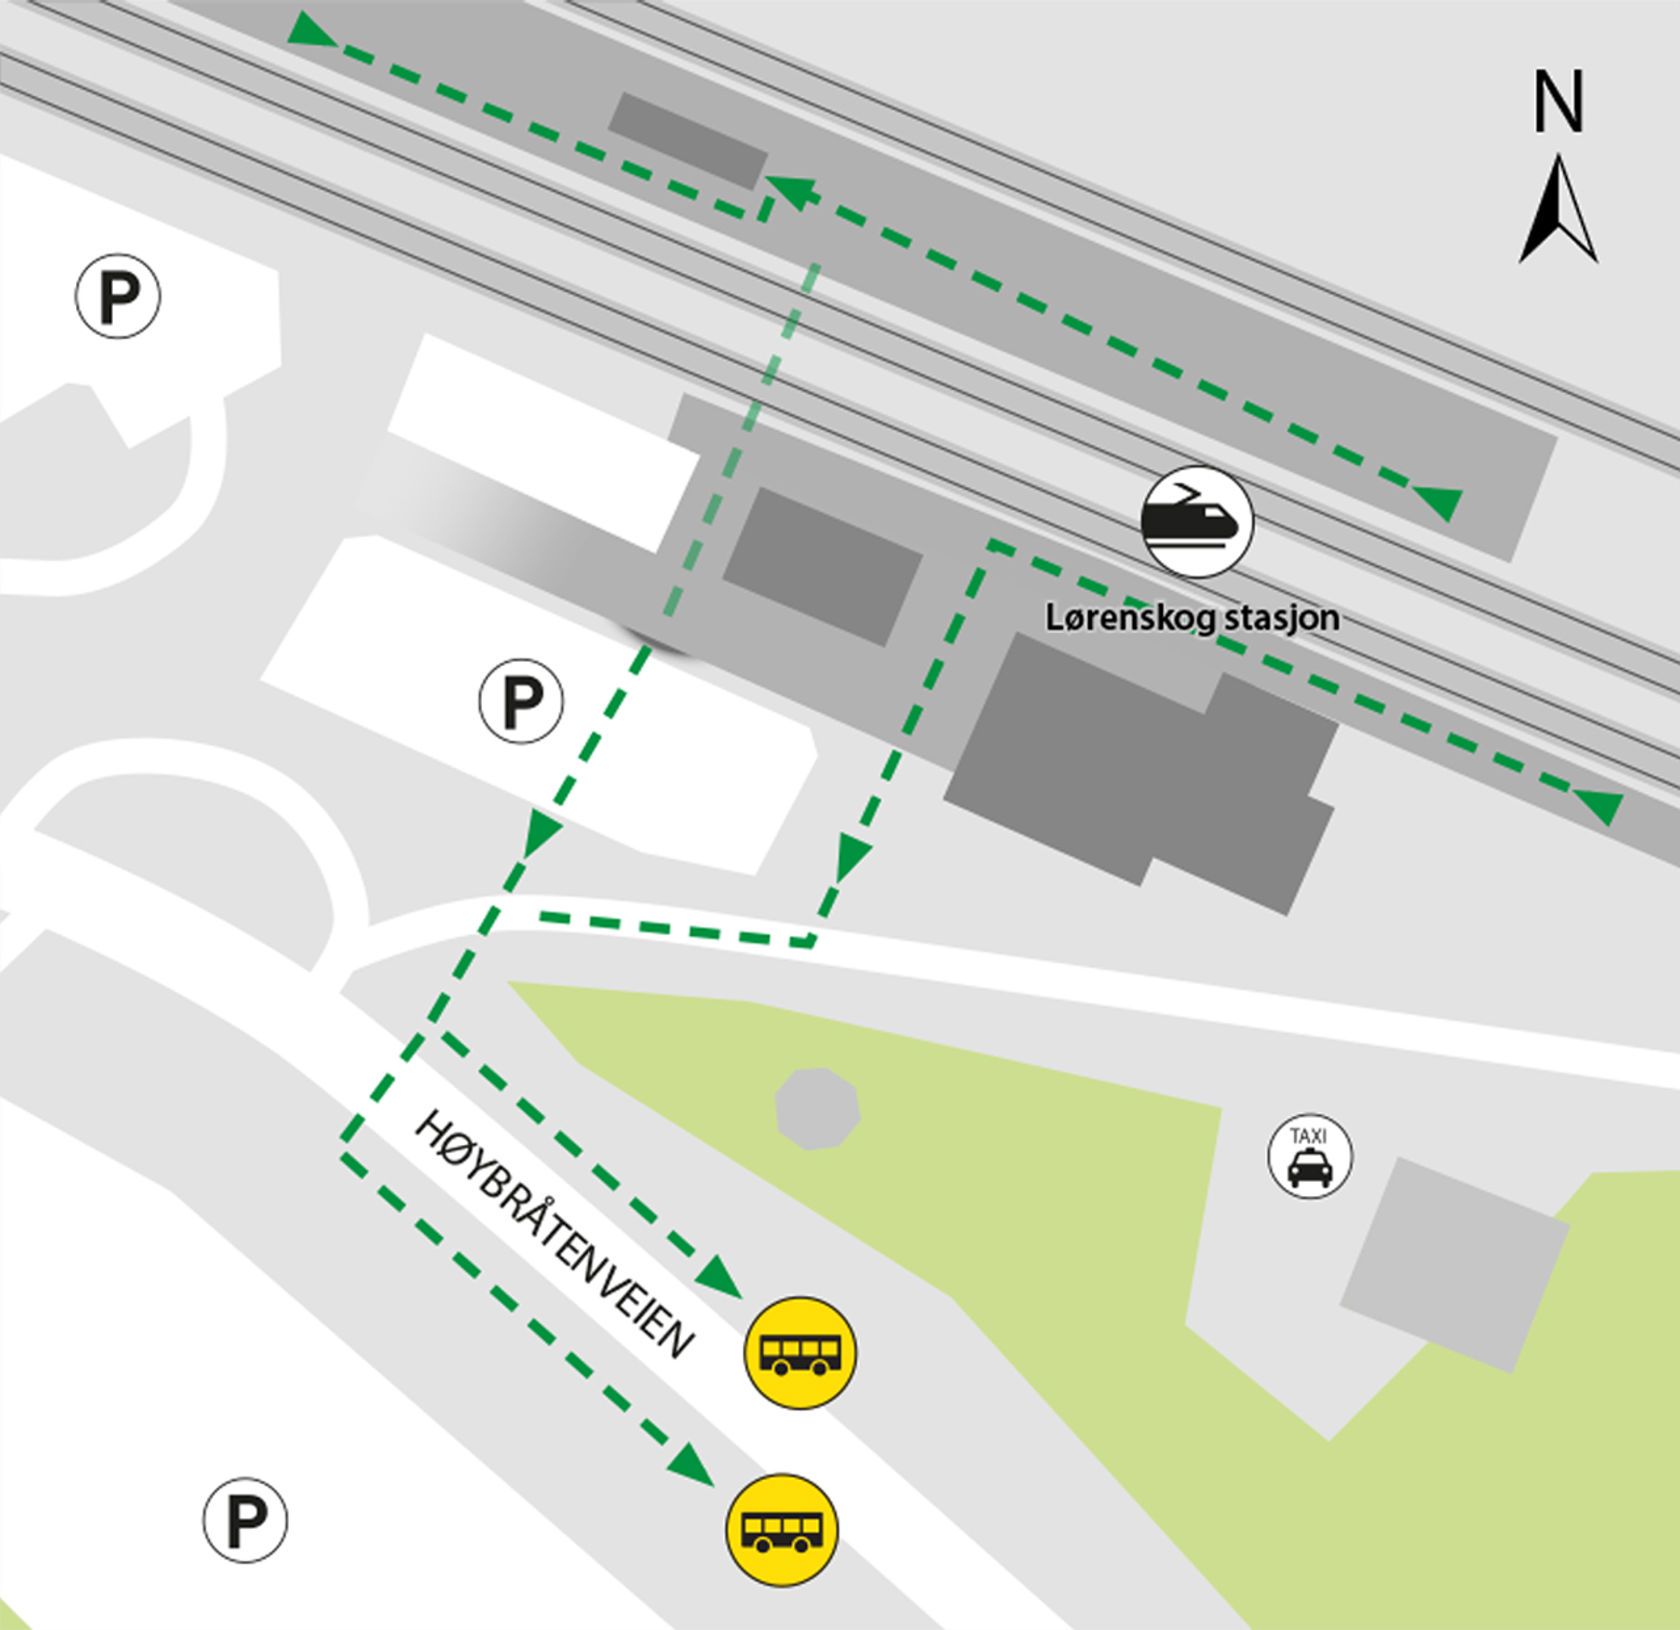 Kartet viser at bussene kjører fra bussholdeplassene Lørenskog stasjon. 